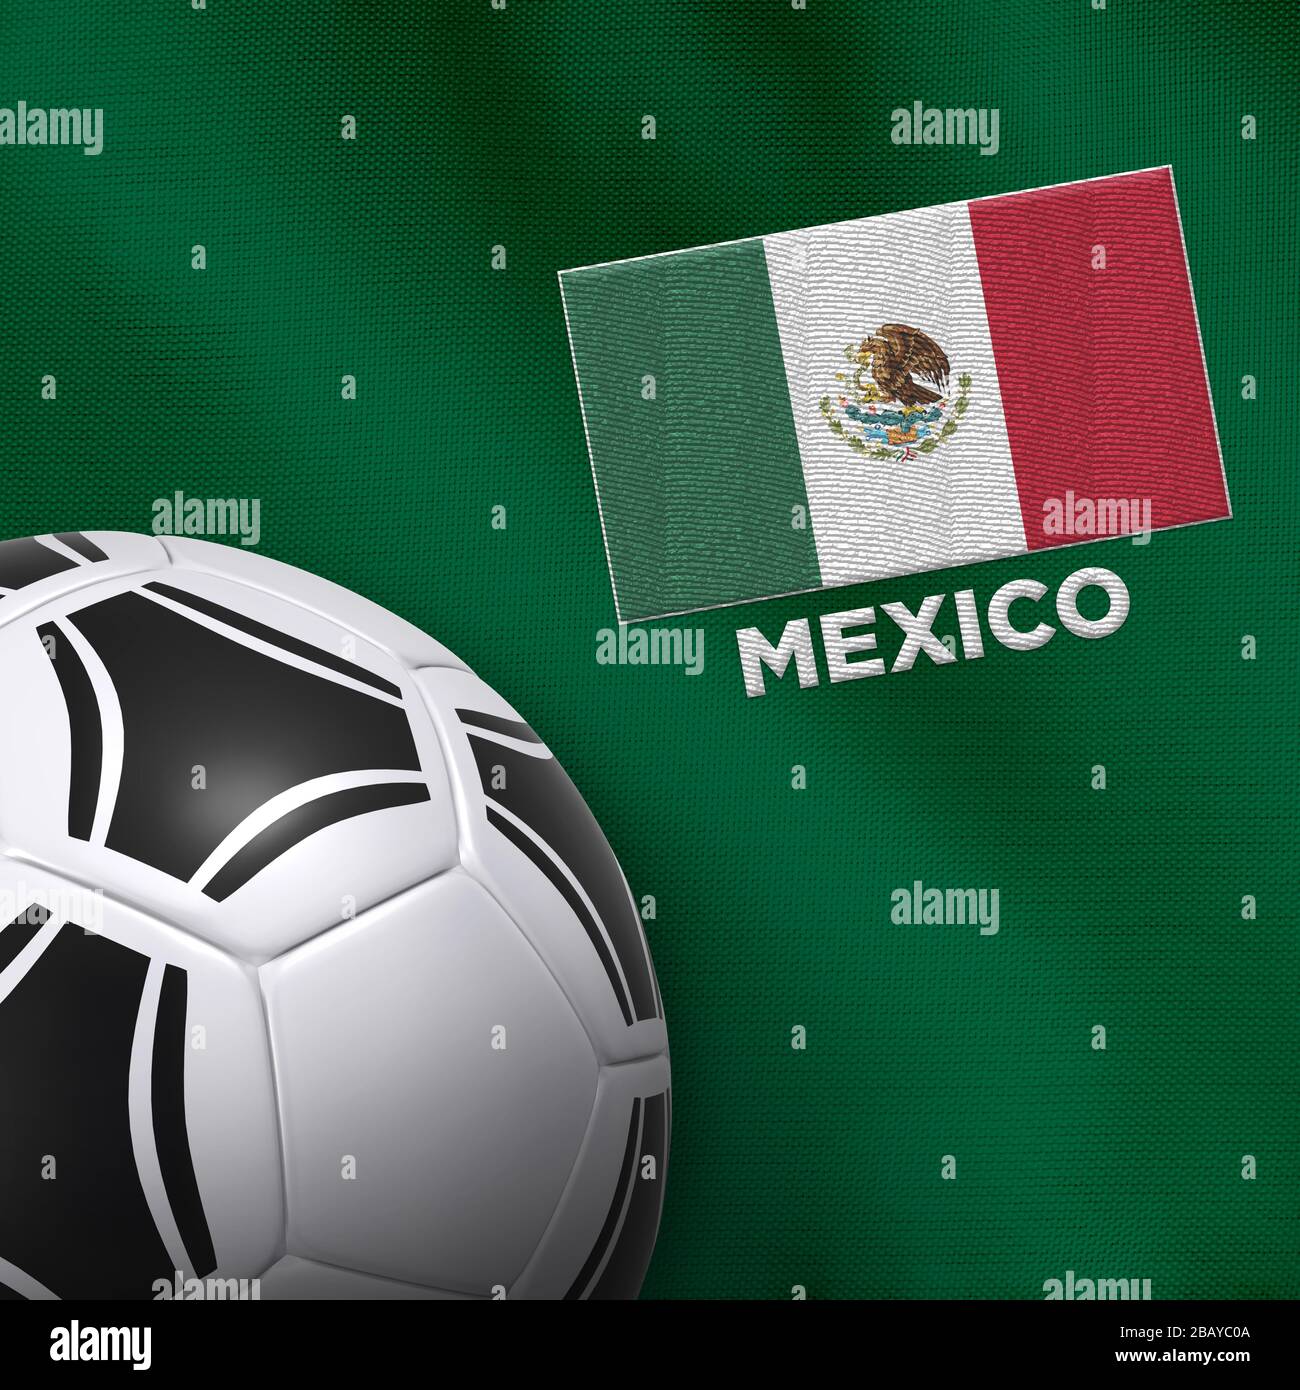 mexico football kit